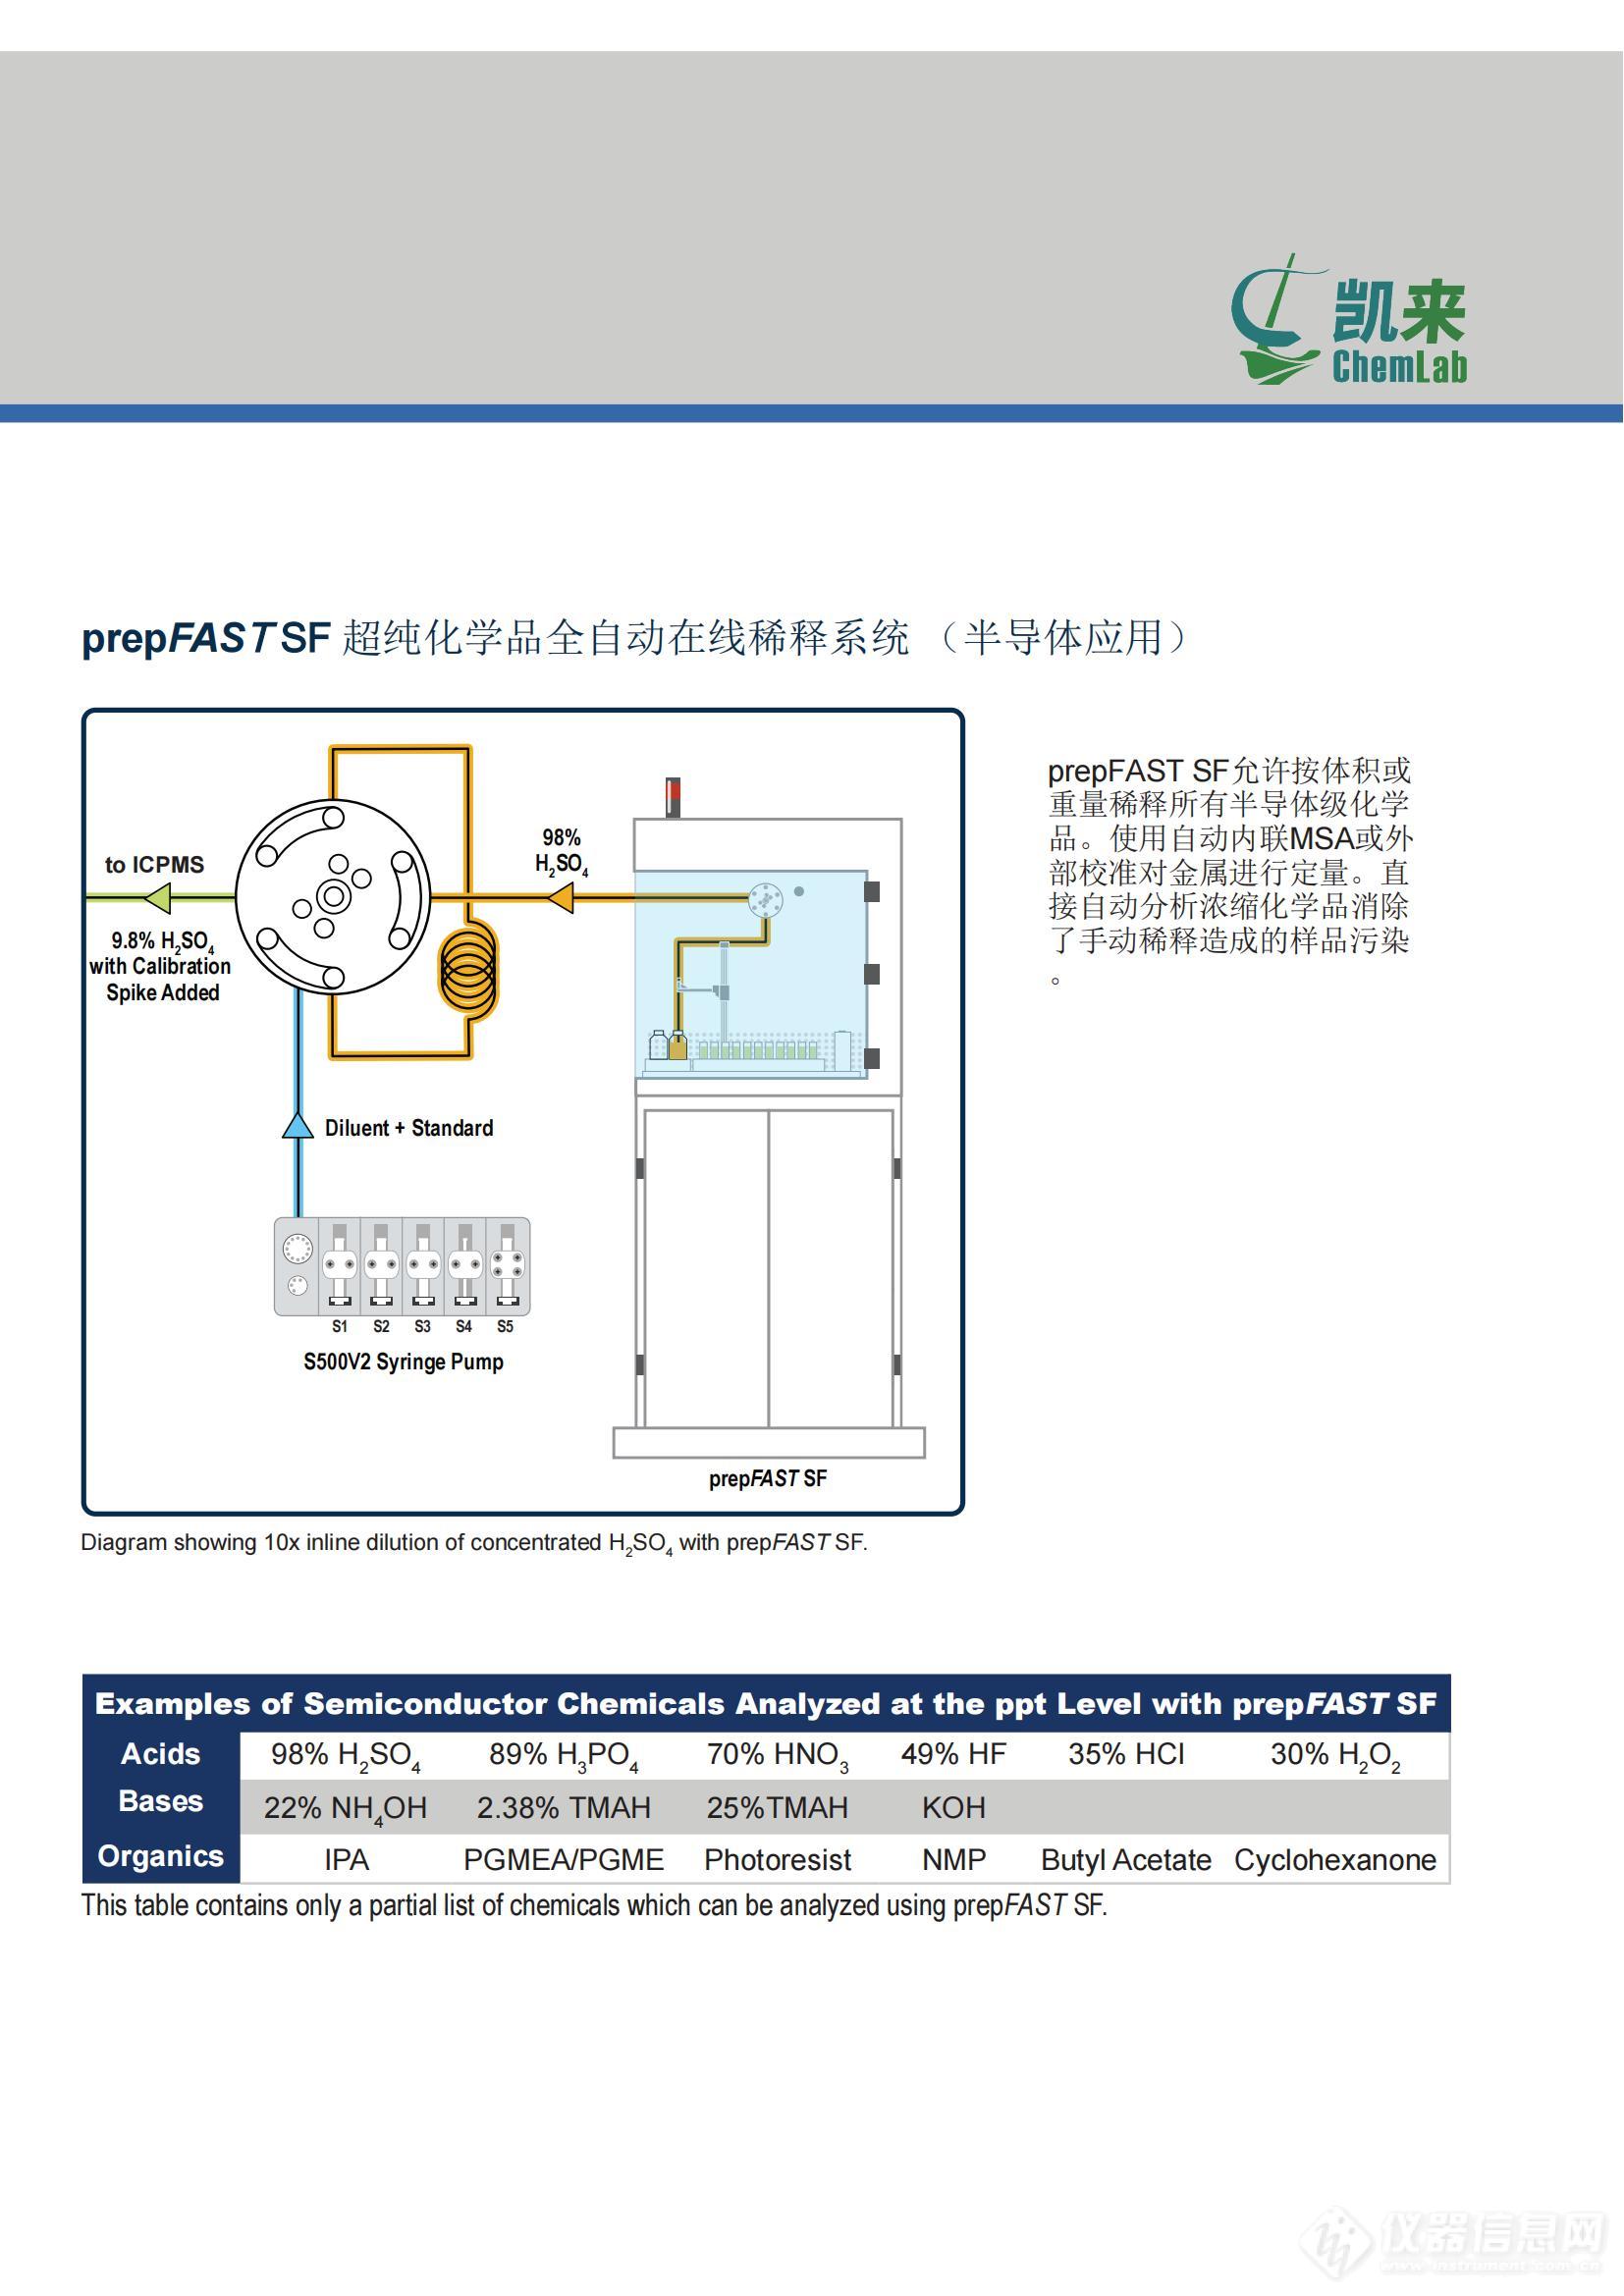 中文产品手册-prepFAST SF 全自动在线稀释系统（半导体版，柜式）_04.jpg